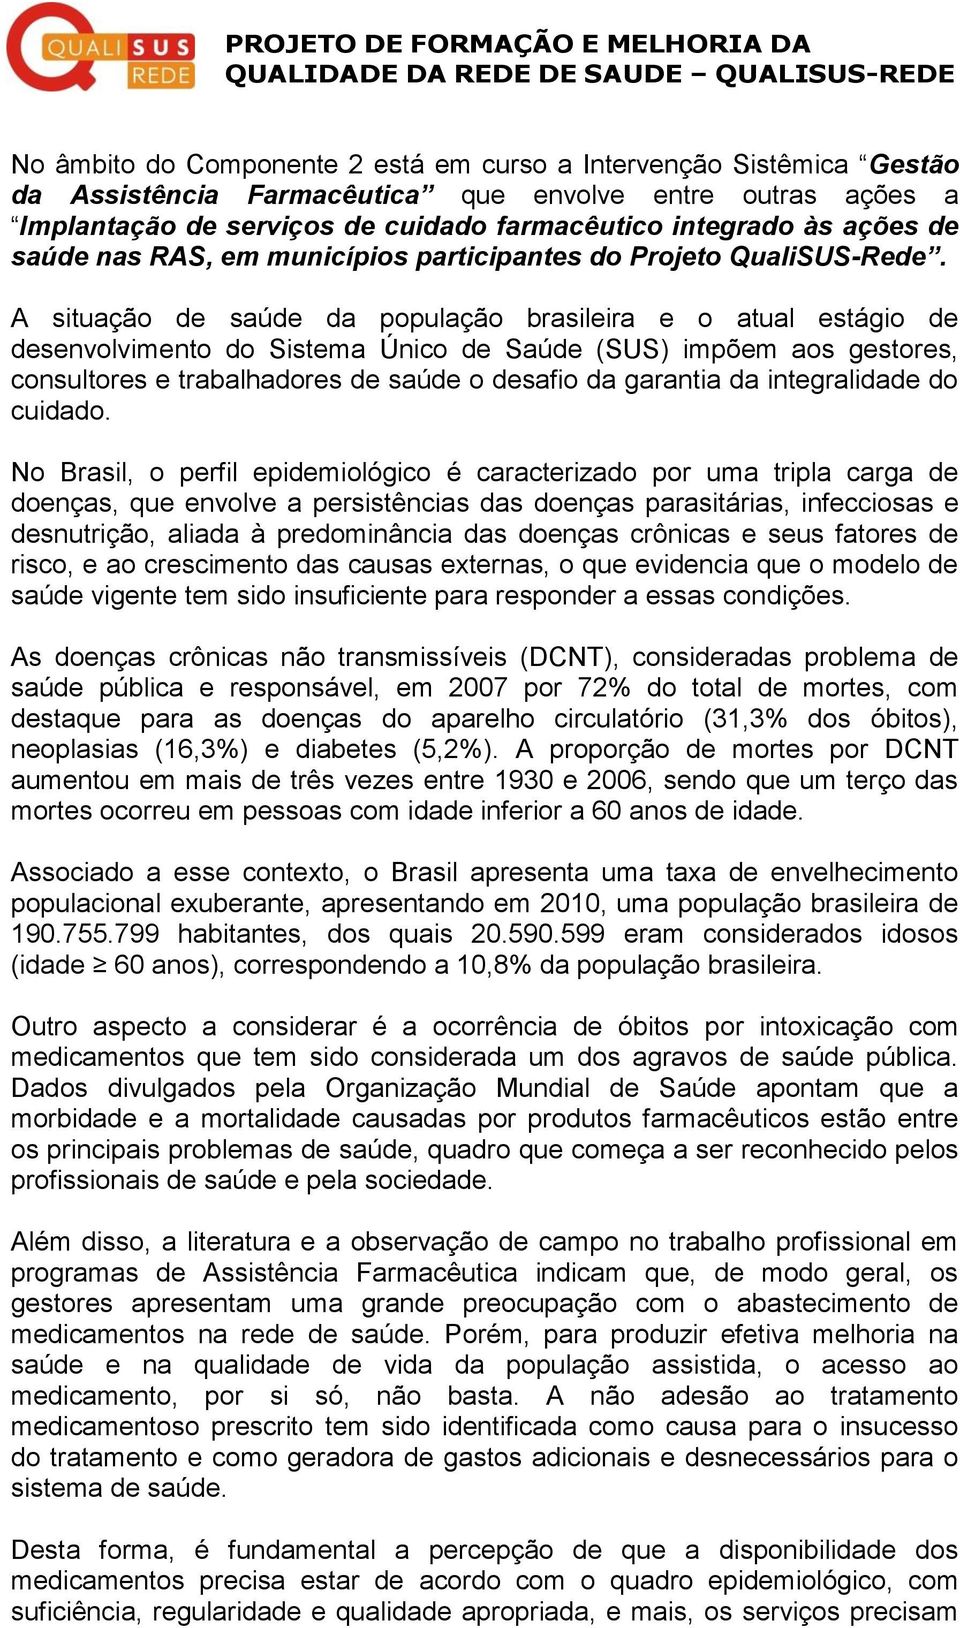 A situação de saúde da população brasileira e o atual estágio de desenvolvimento do Sistema Único de Saúde (SUS) impõem aos gestores, consultores e trabalhadores de saúde o desafio da garantia da